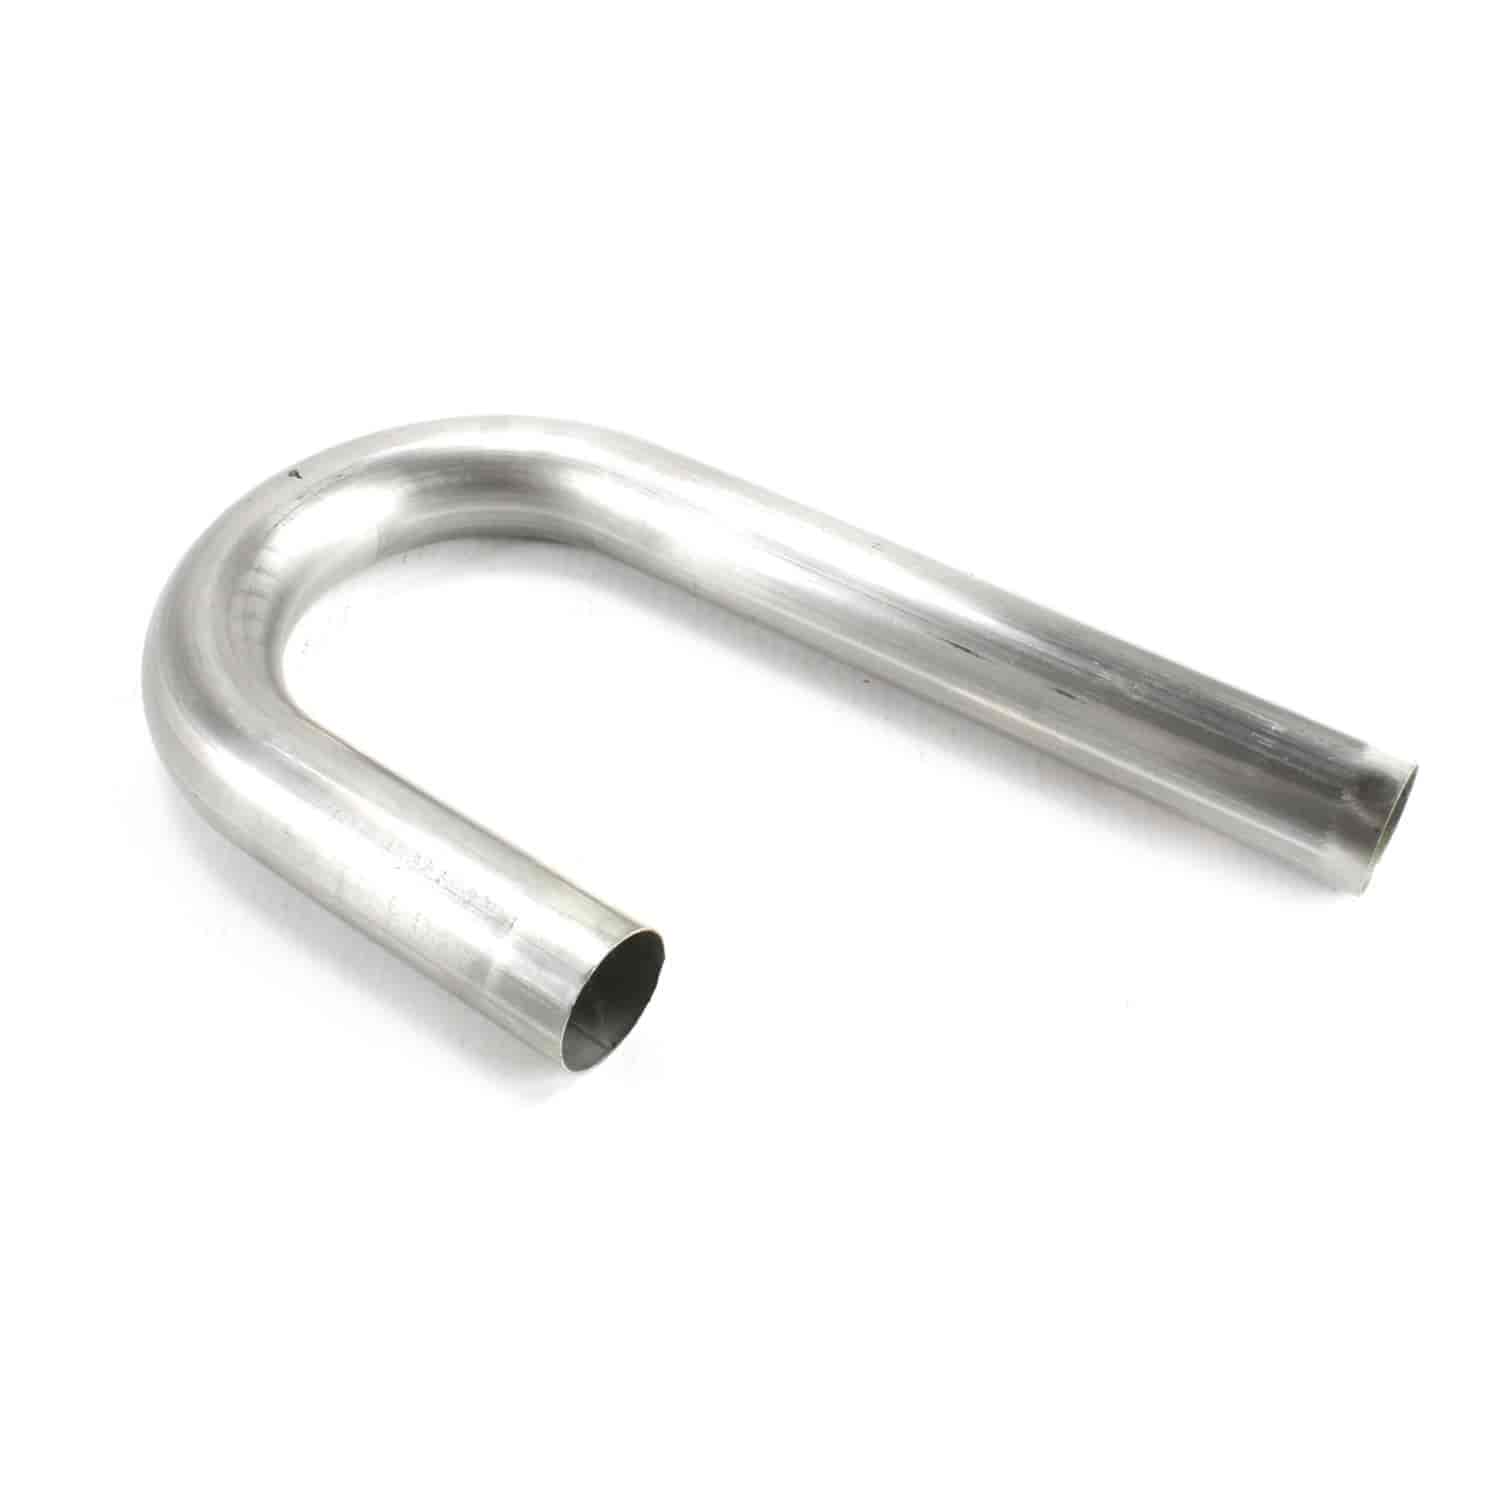 Stainless Steel J-Bend Exhaust Tubing 18 Gauge